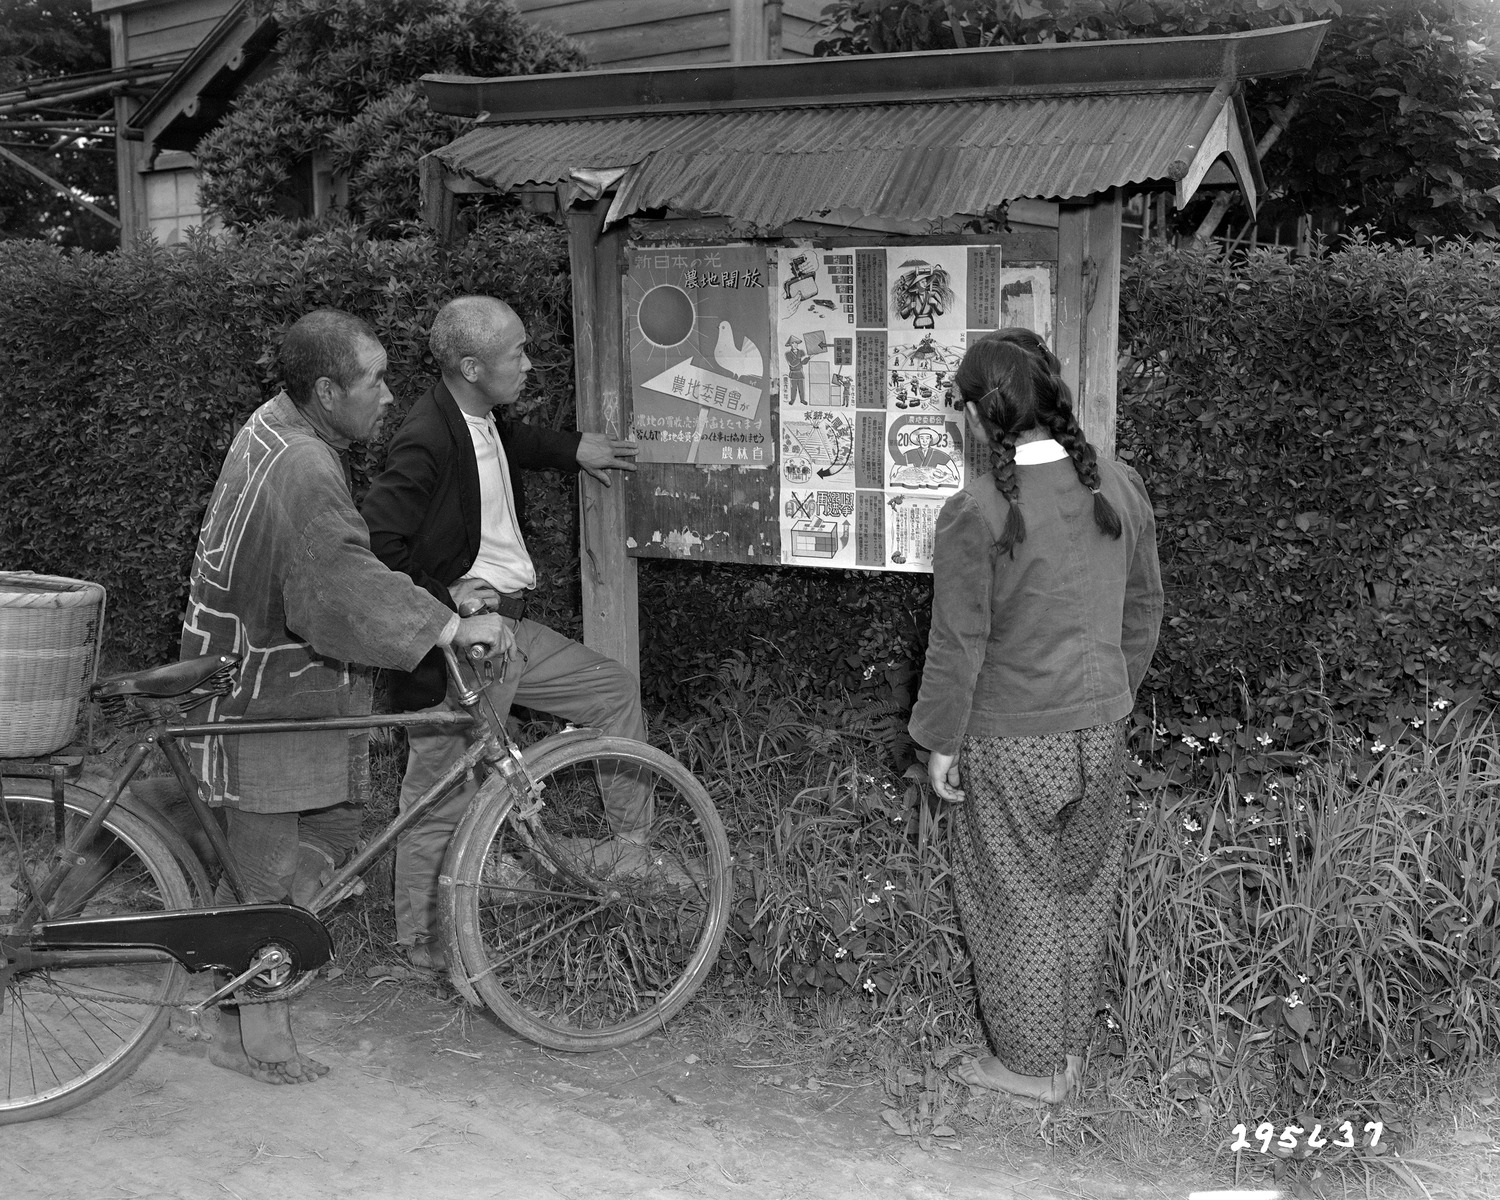 農地改革の説明をする掲示板を見る人たち | 昭和館デジタルアーカイブ